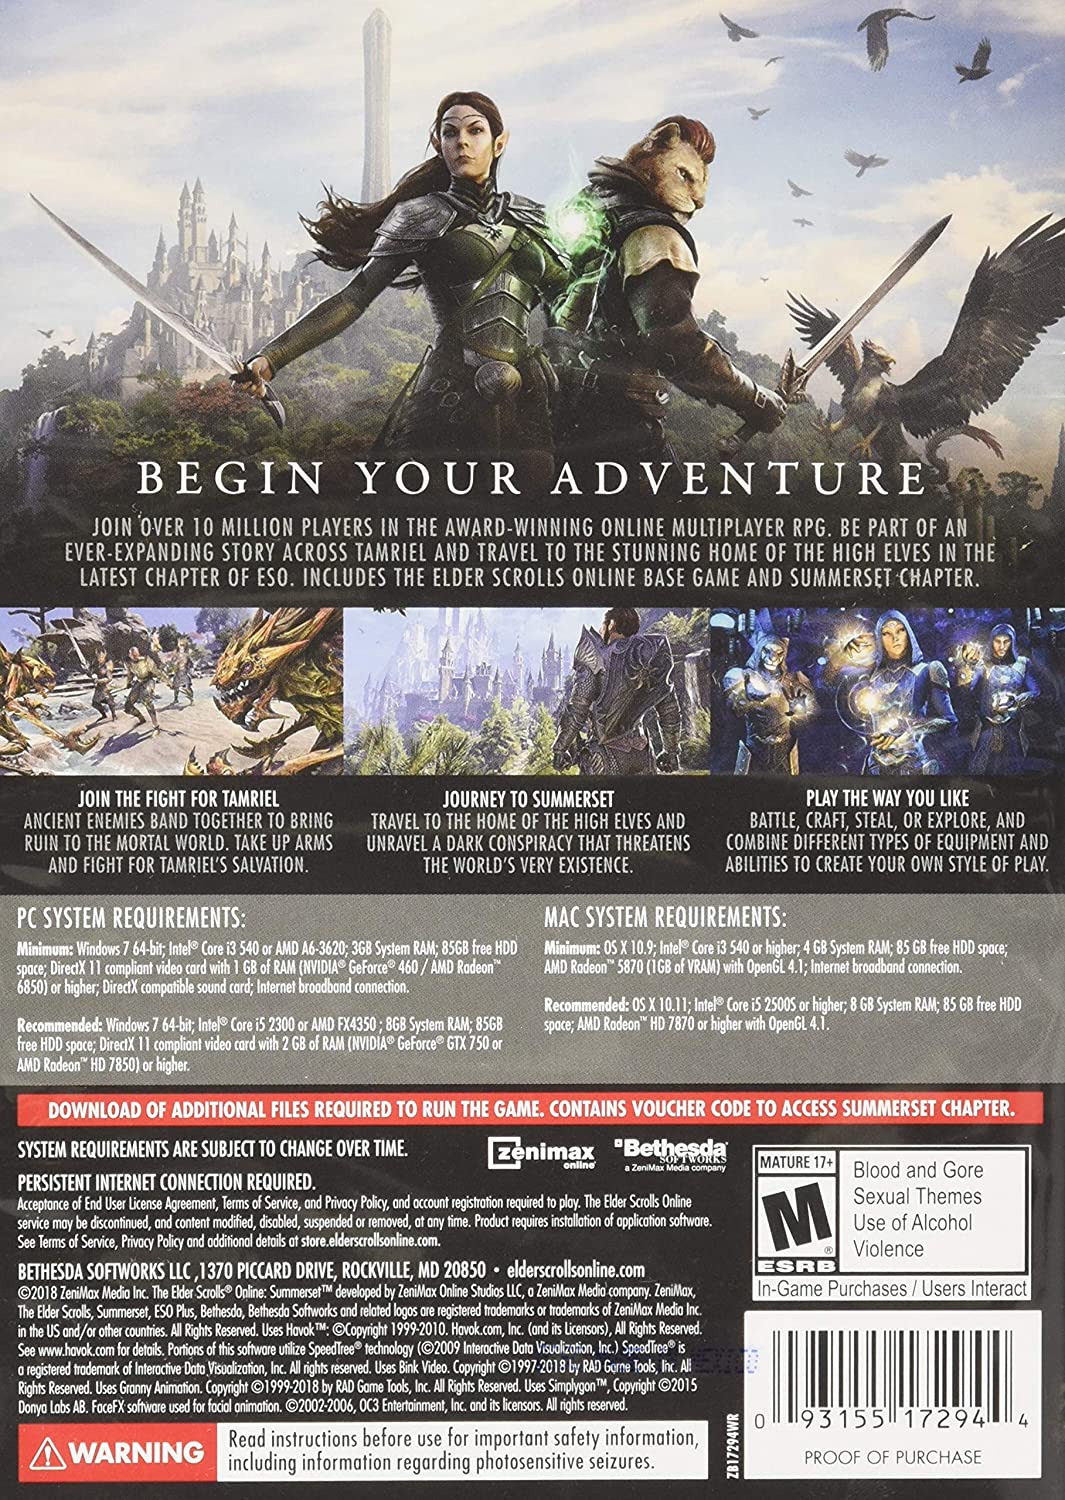 Elder Scrolls Online Summerset (Xbox One)